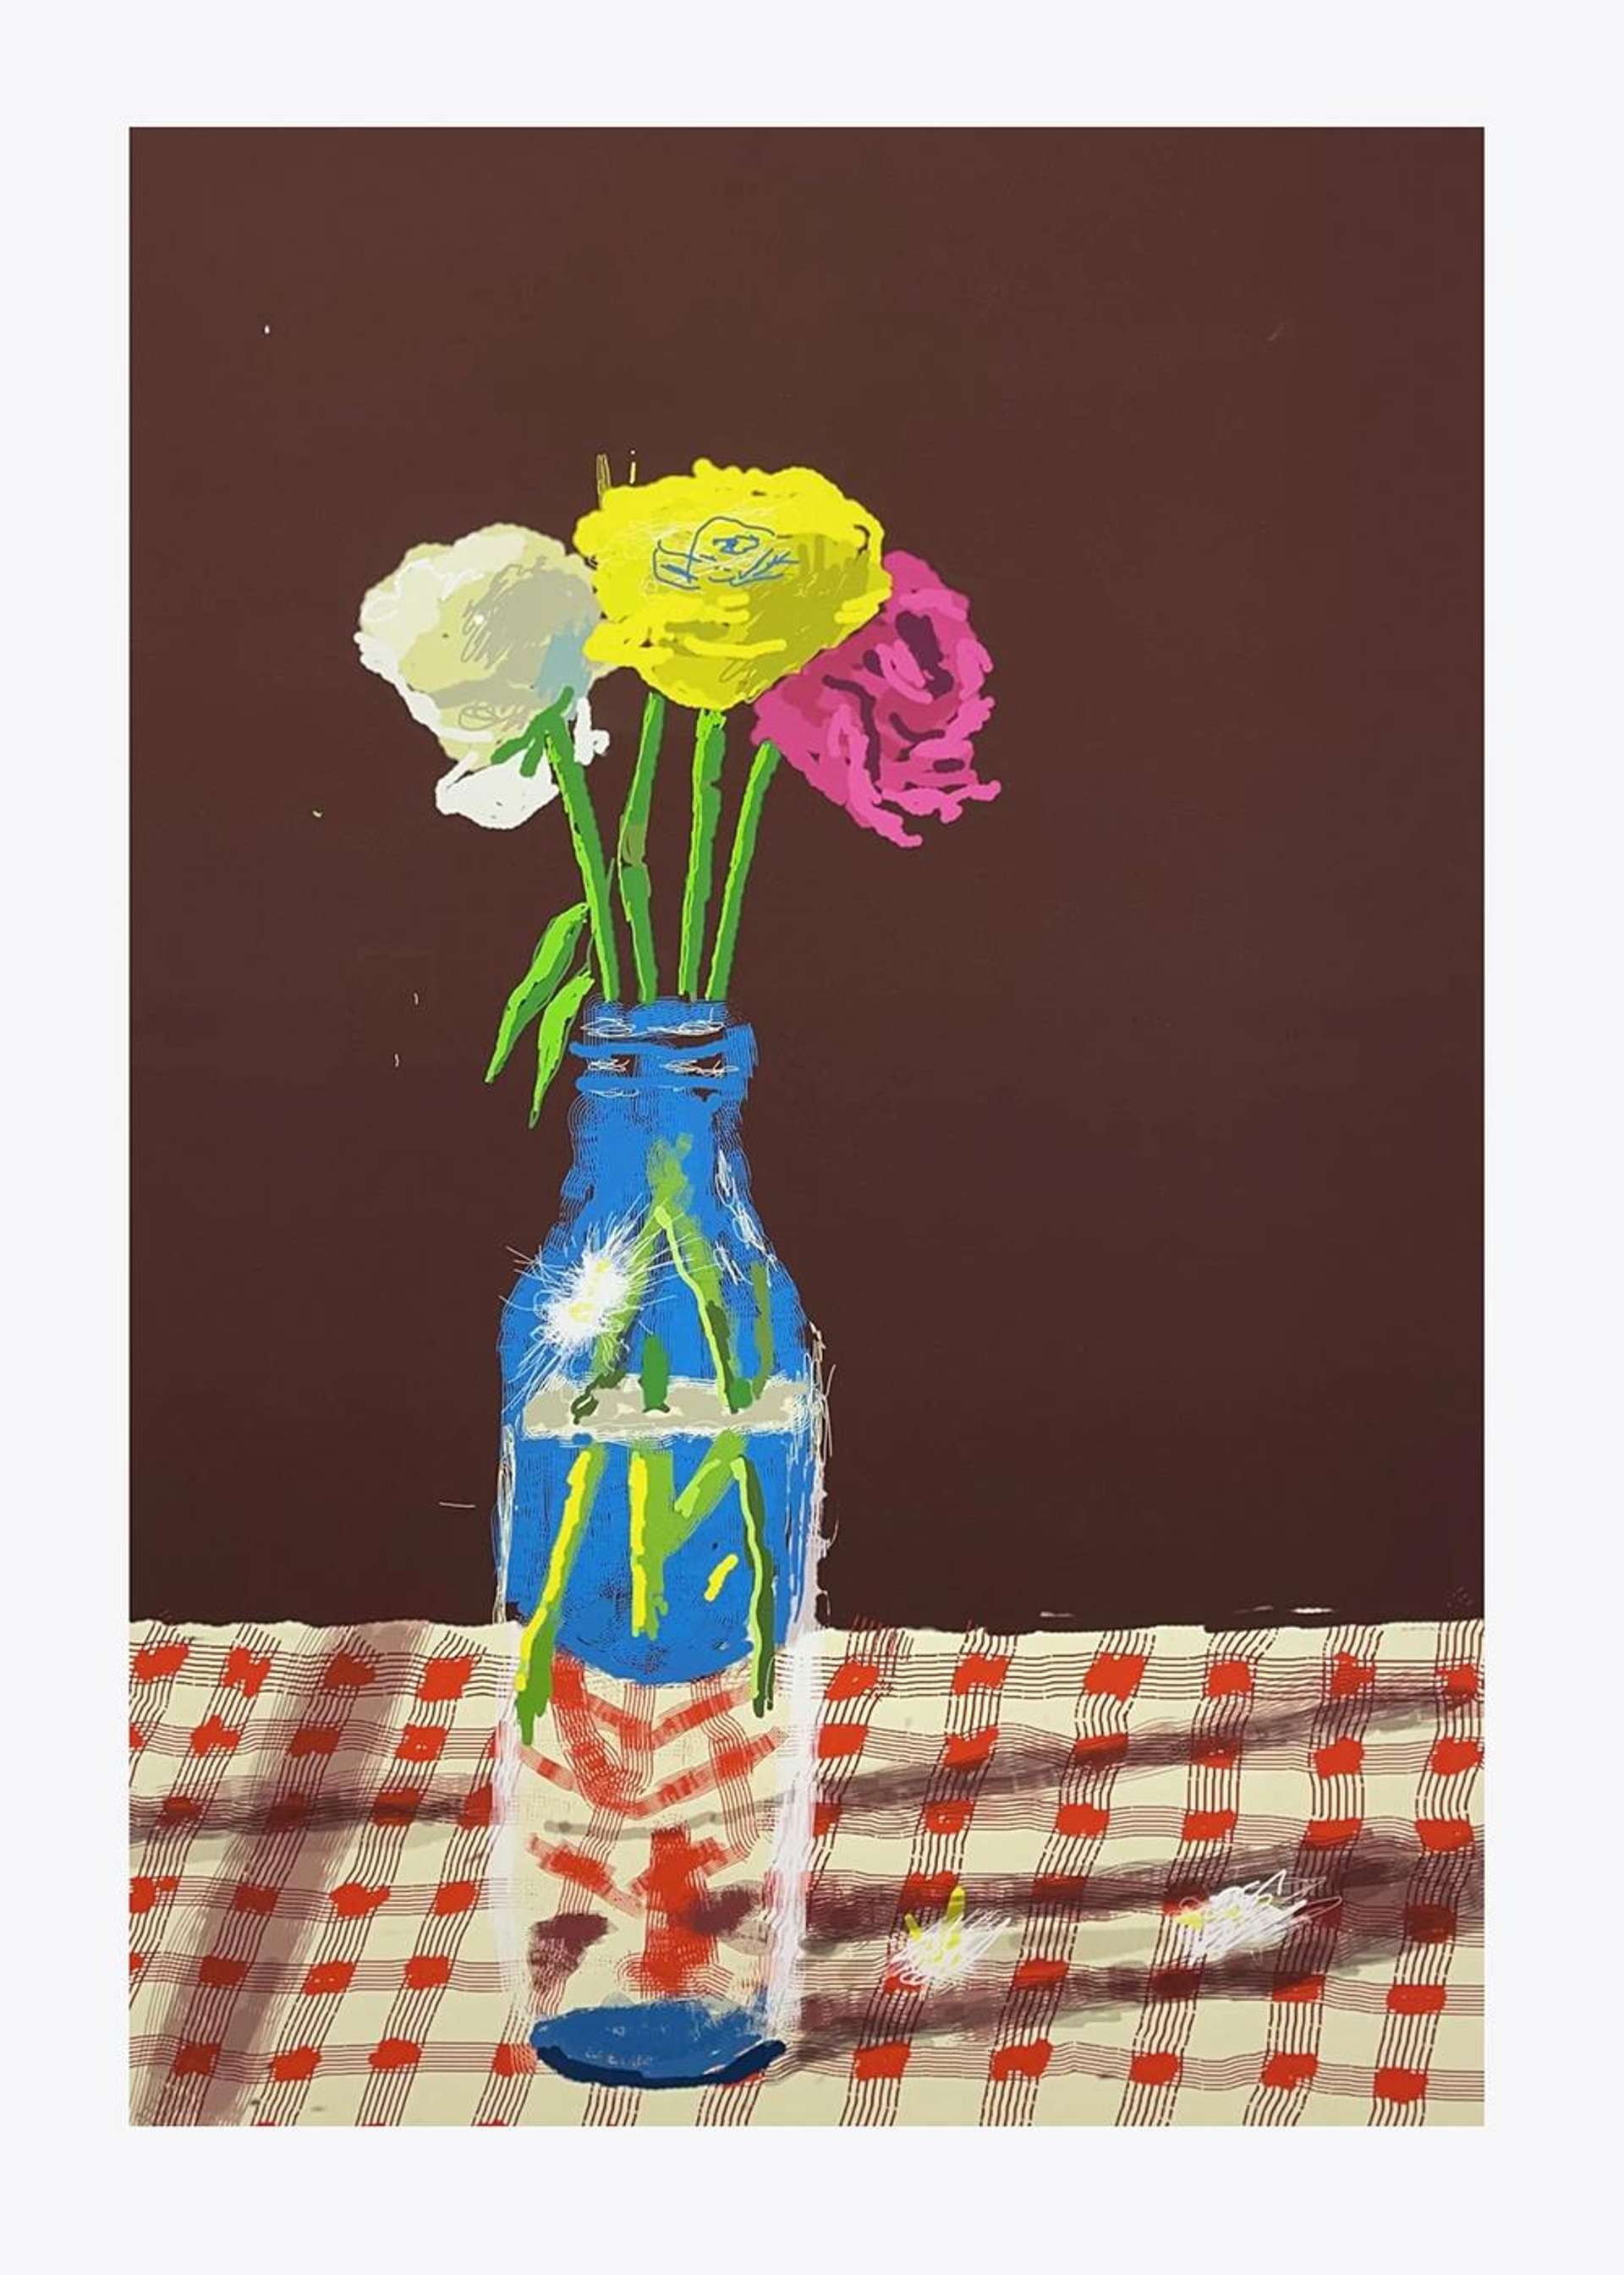 23 March 2021, Flowers In A Milk Bottle - Signed Print by David Hockney 2021 - MyArtBroker